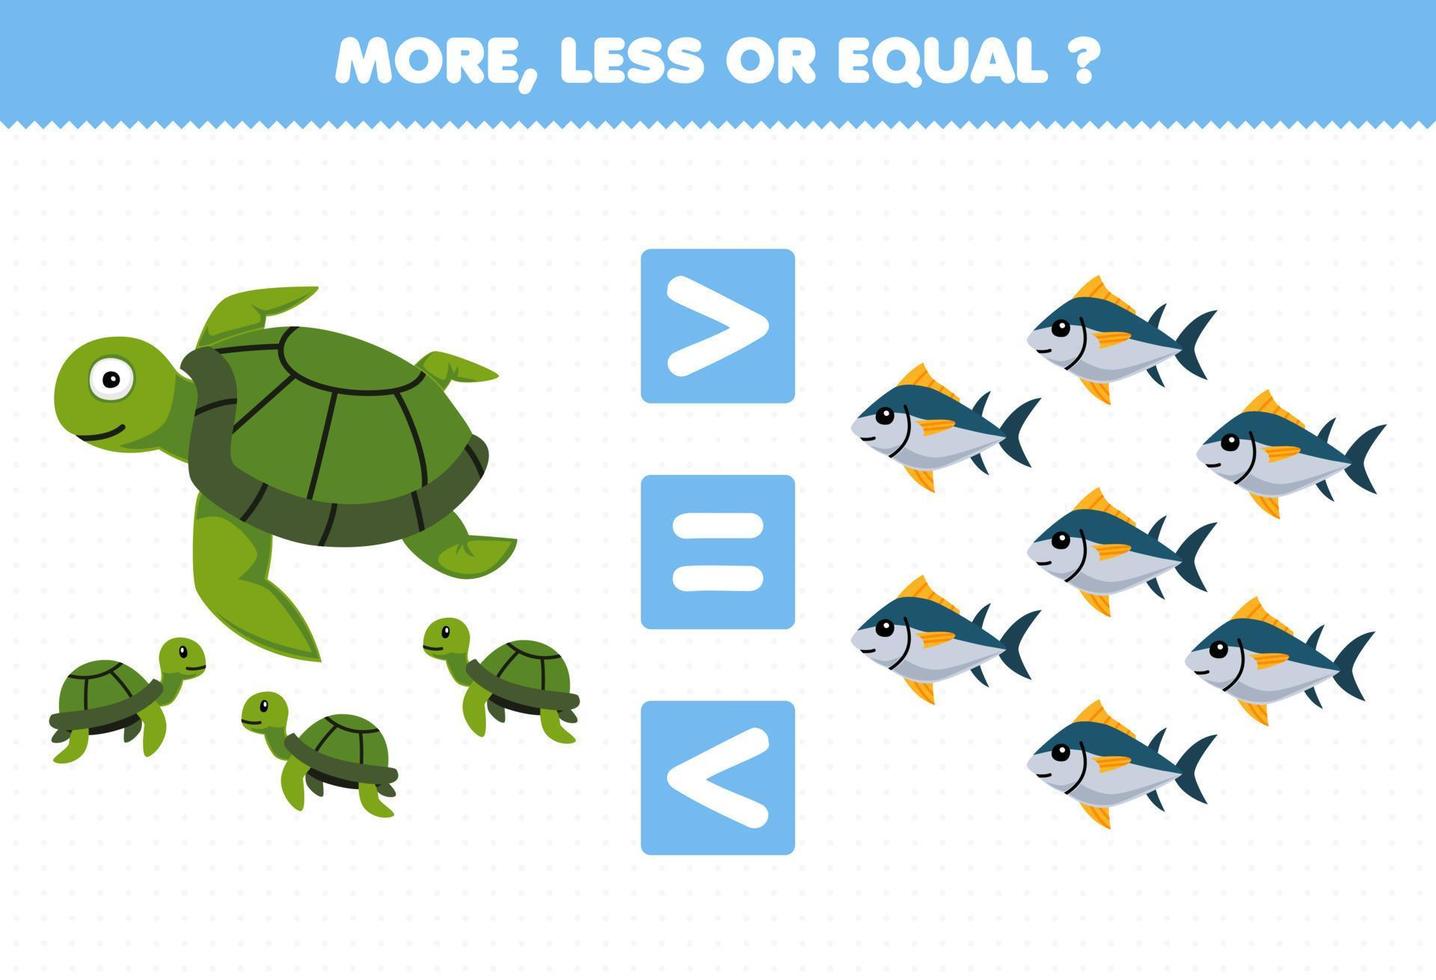 jogo educacional para crianças mais, menos ou igual, conte a quantidade de tartaruga de desenho animado e planilha subaquática imprimível vetor